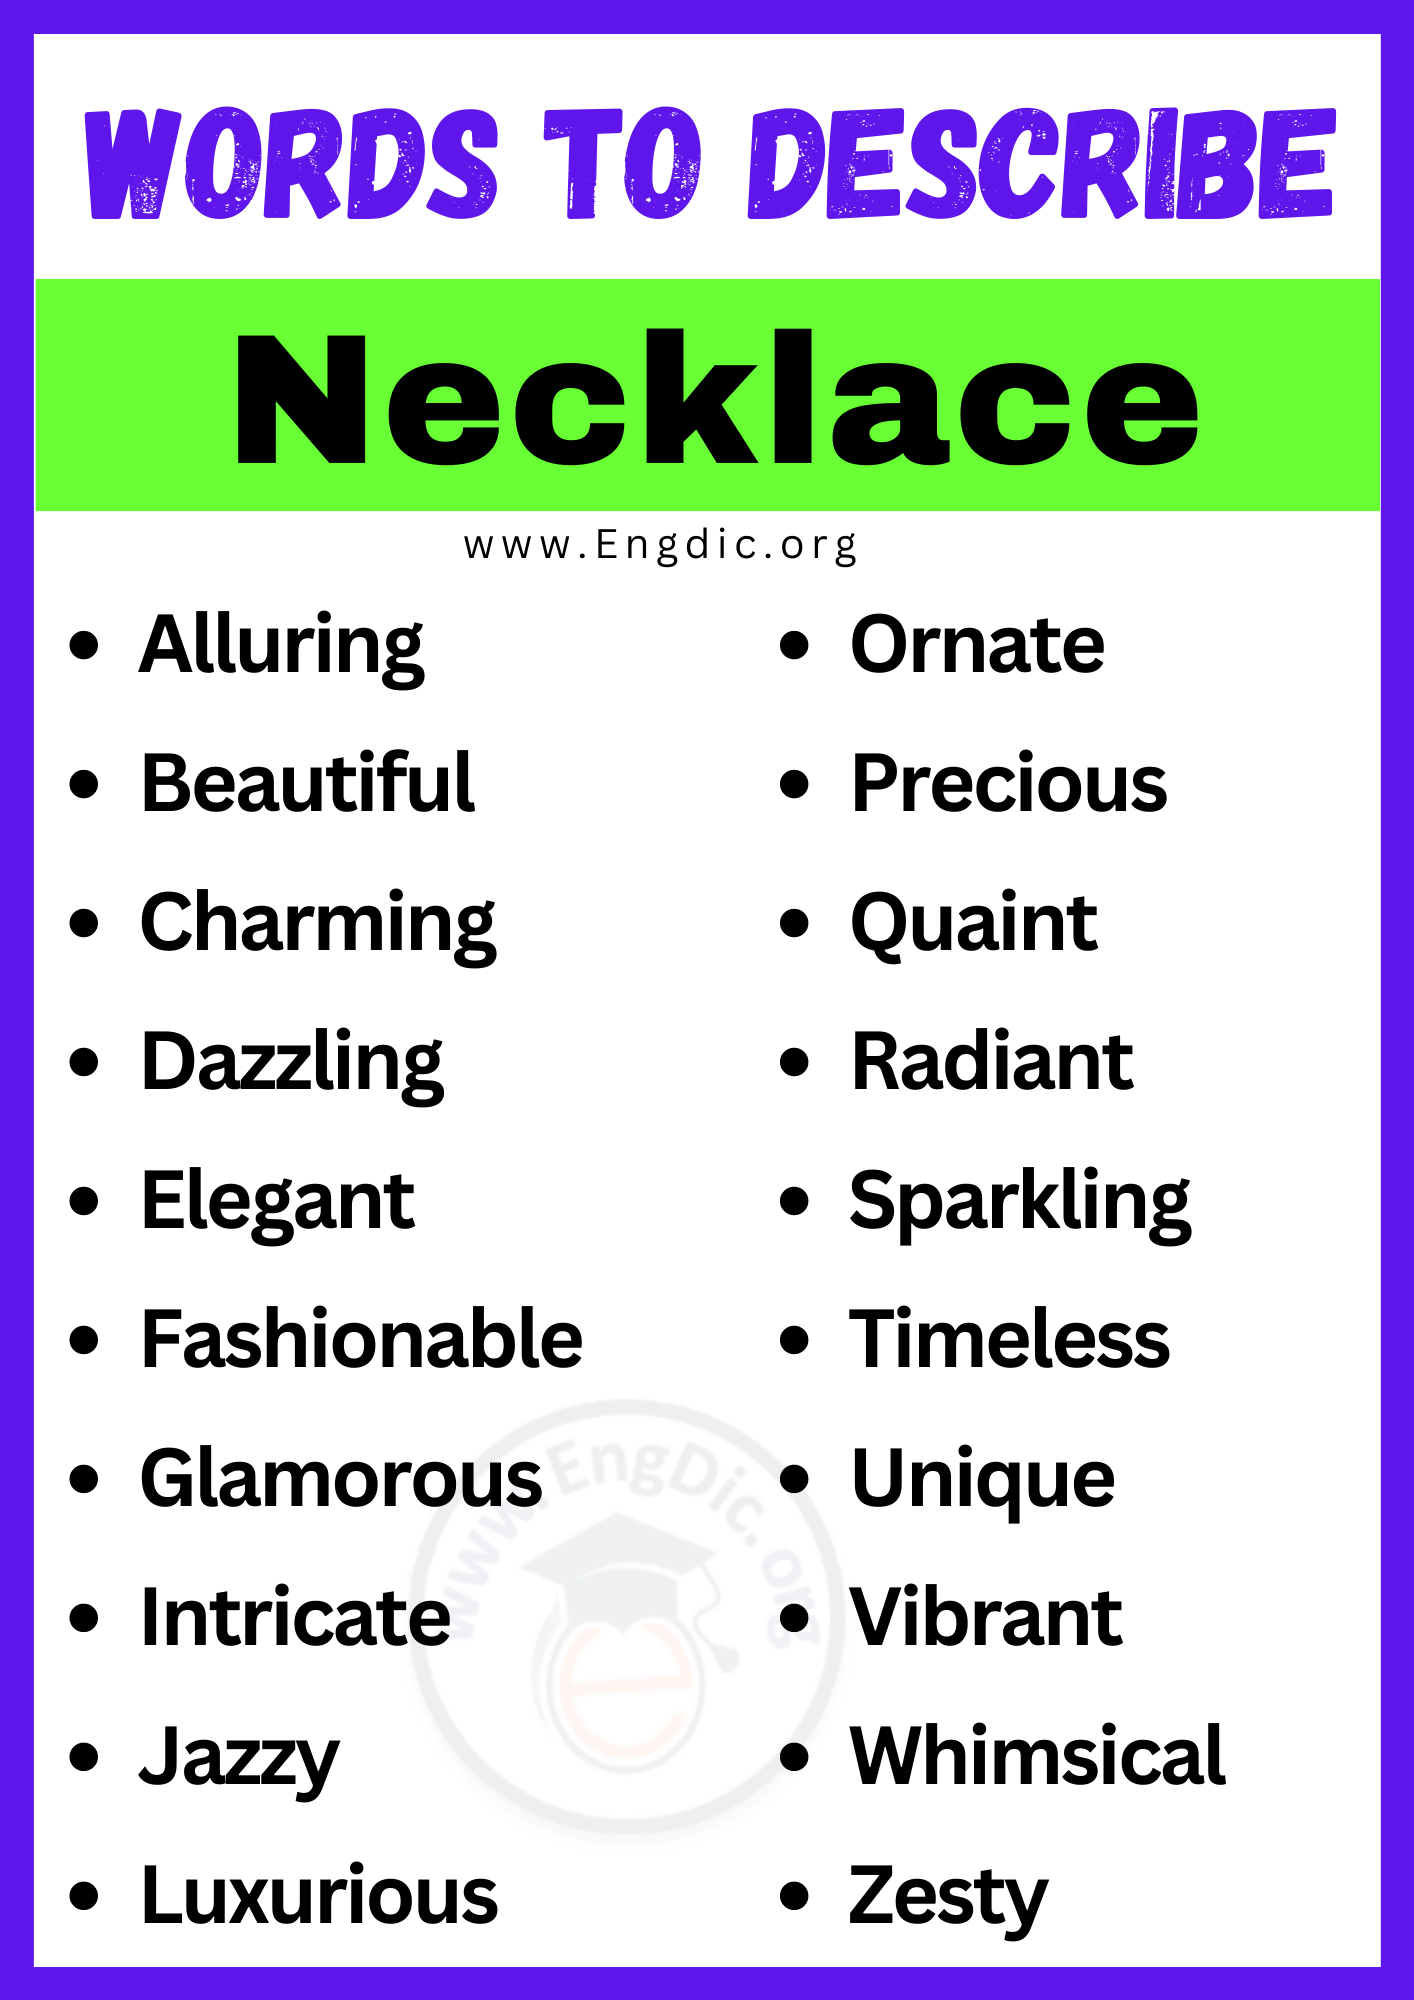 Words to Describe Necklace